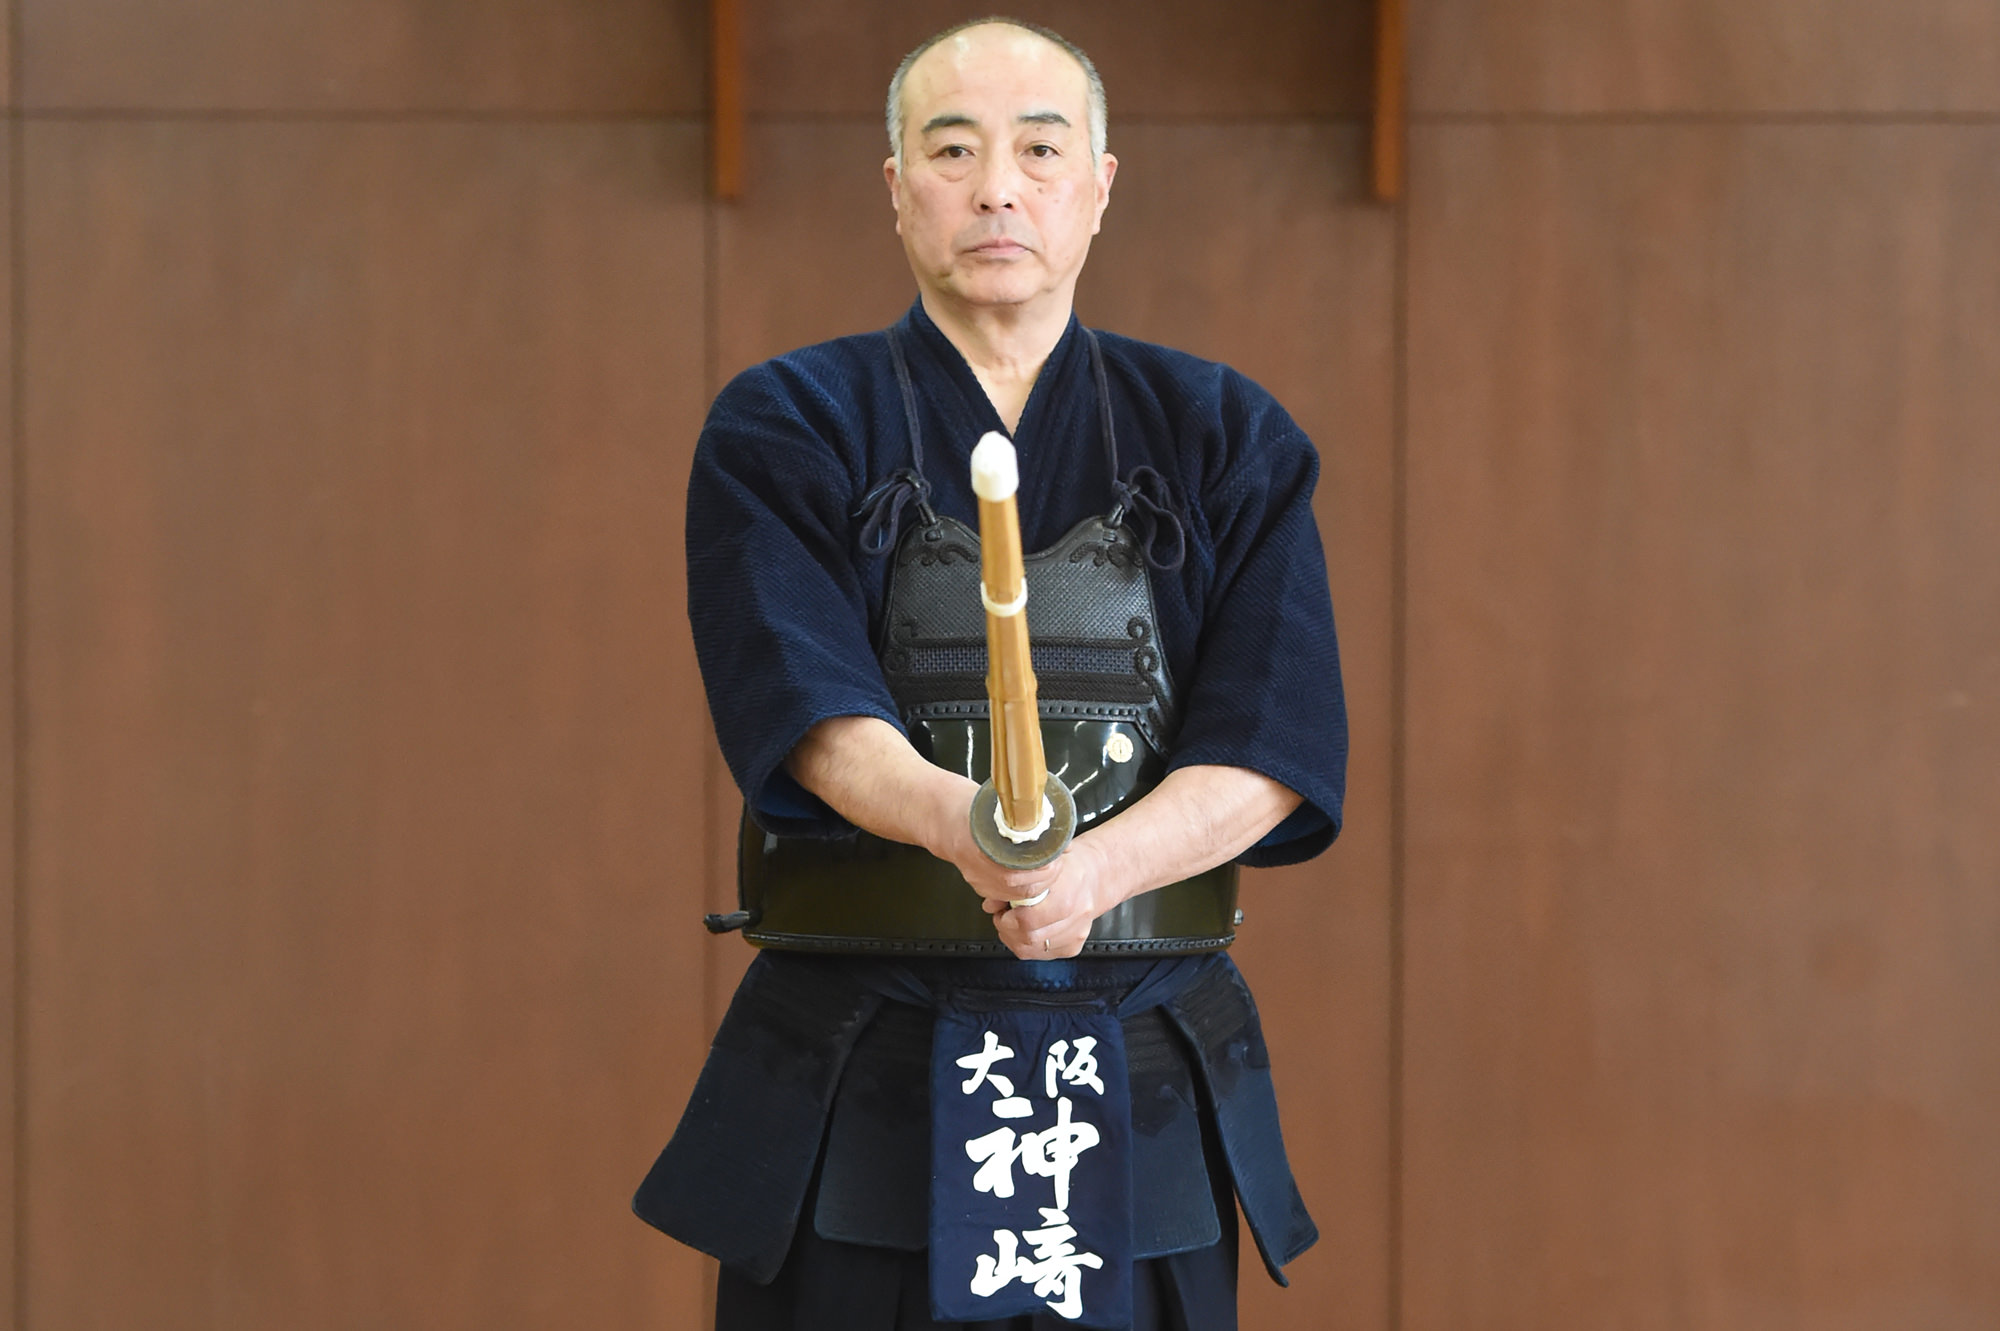 剣道は攻防表裏一体。その源は構えにある | 剣道時代インターナショナル